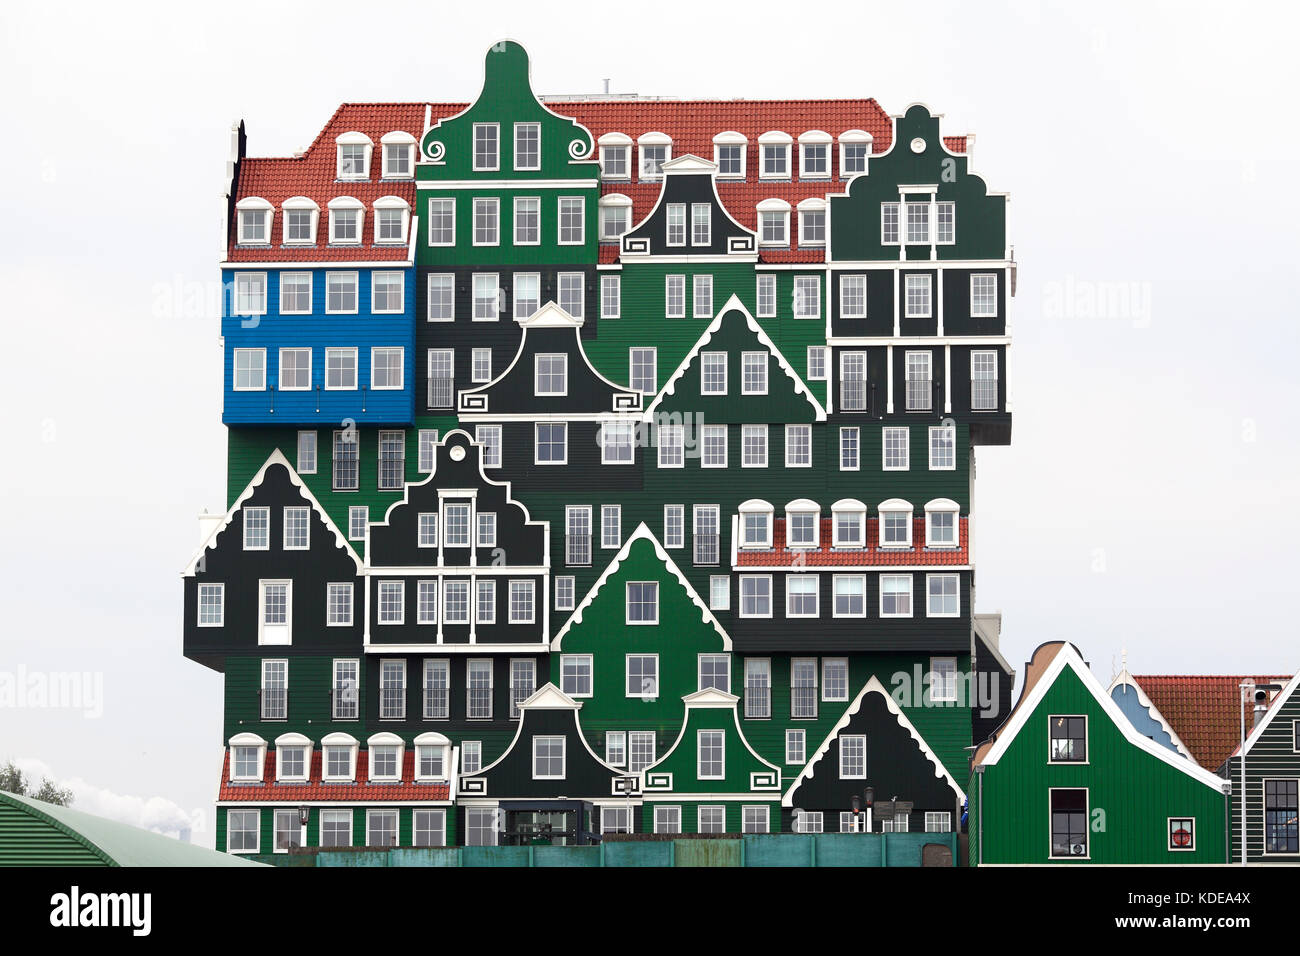 L'hôtel Inntel Zaandam -, un immeuble avec façade en bois conçu pour ressembler à une pile de maisons hollandaises traditionnelles. Zaandam loufoques ! Banque D'Images